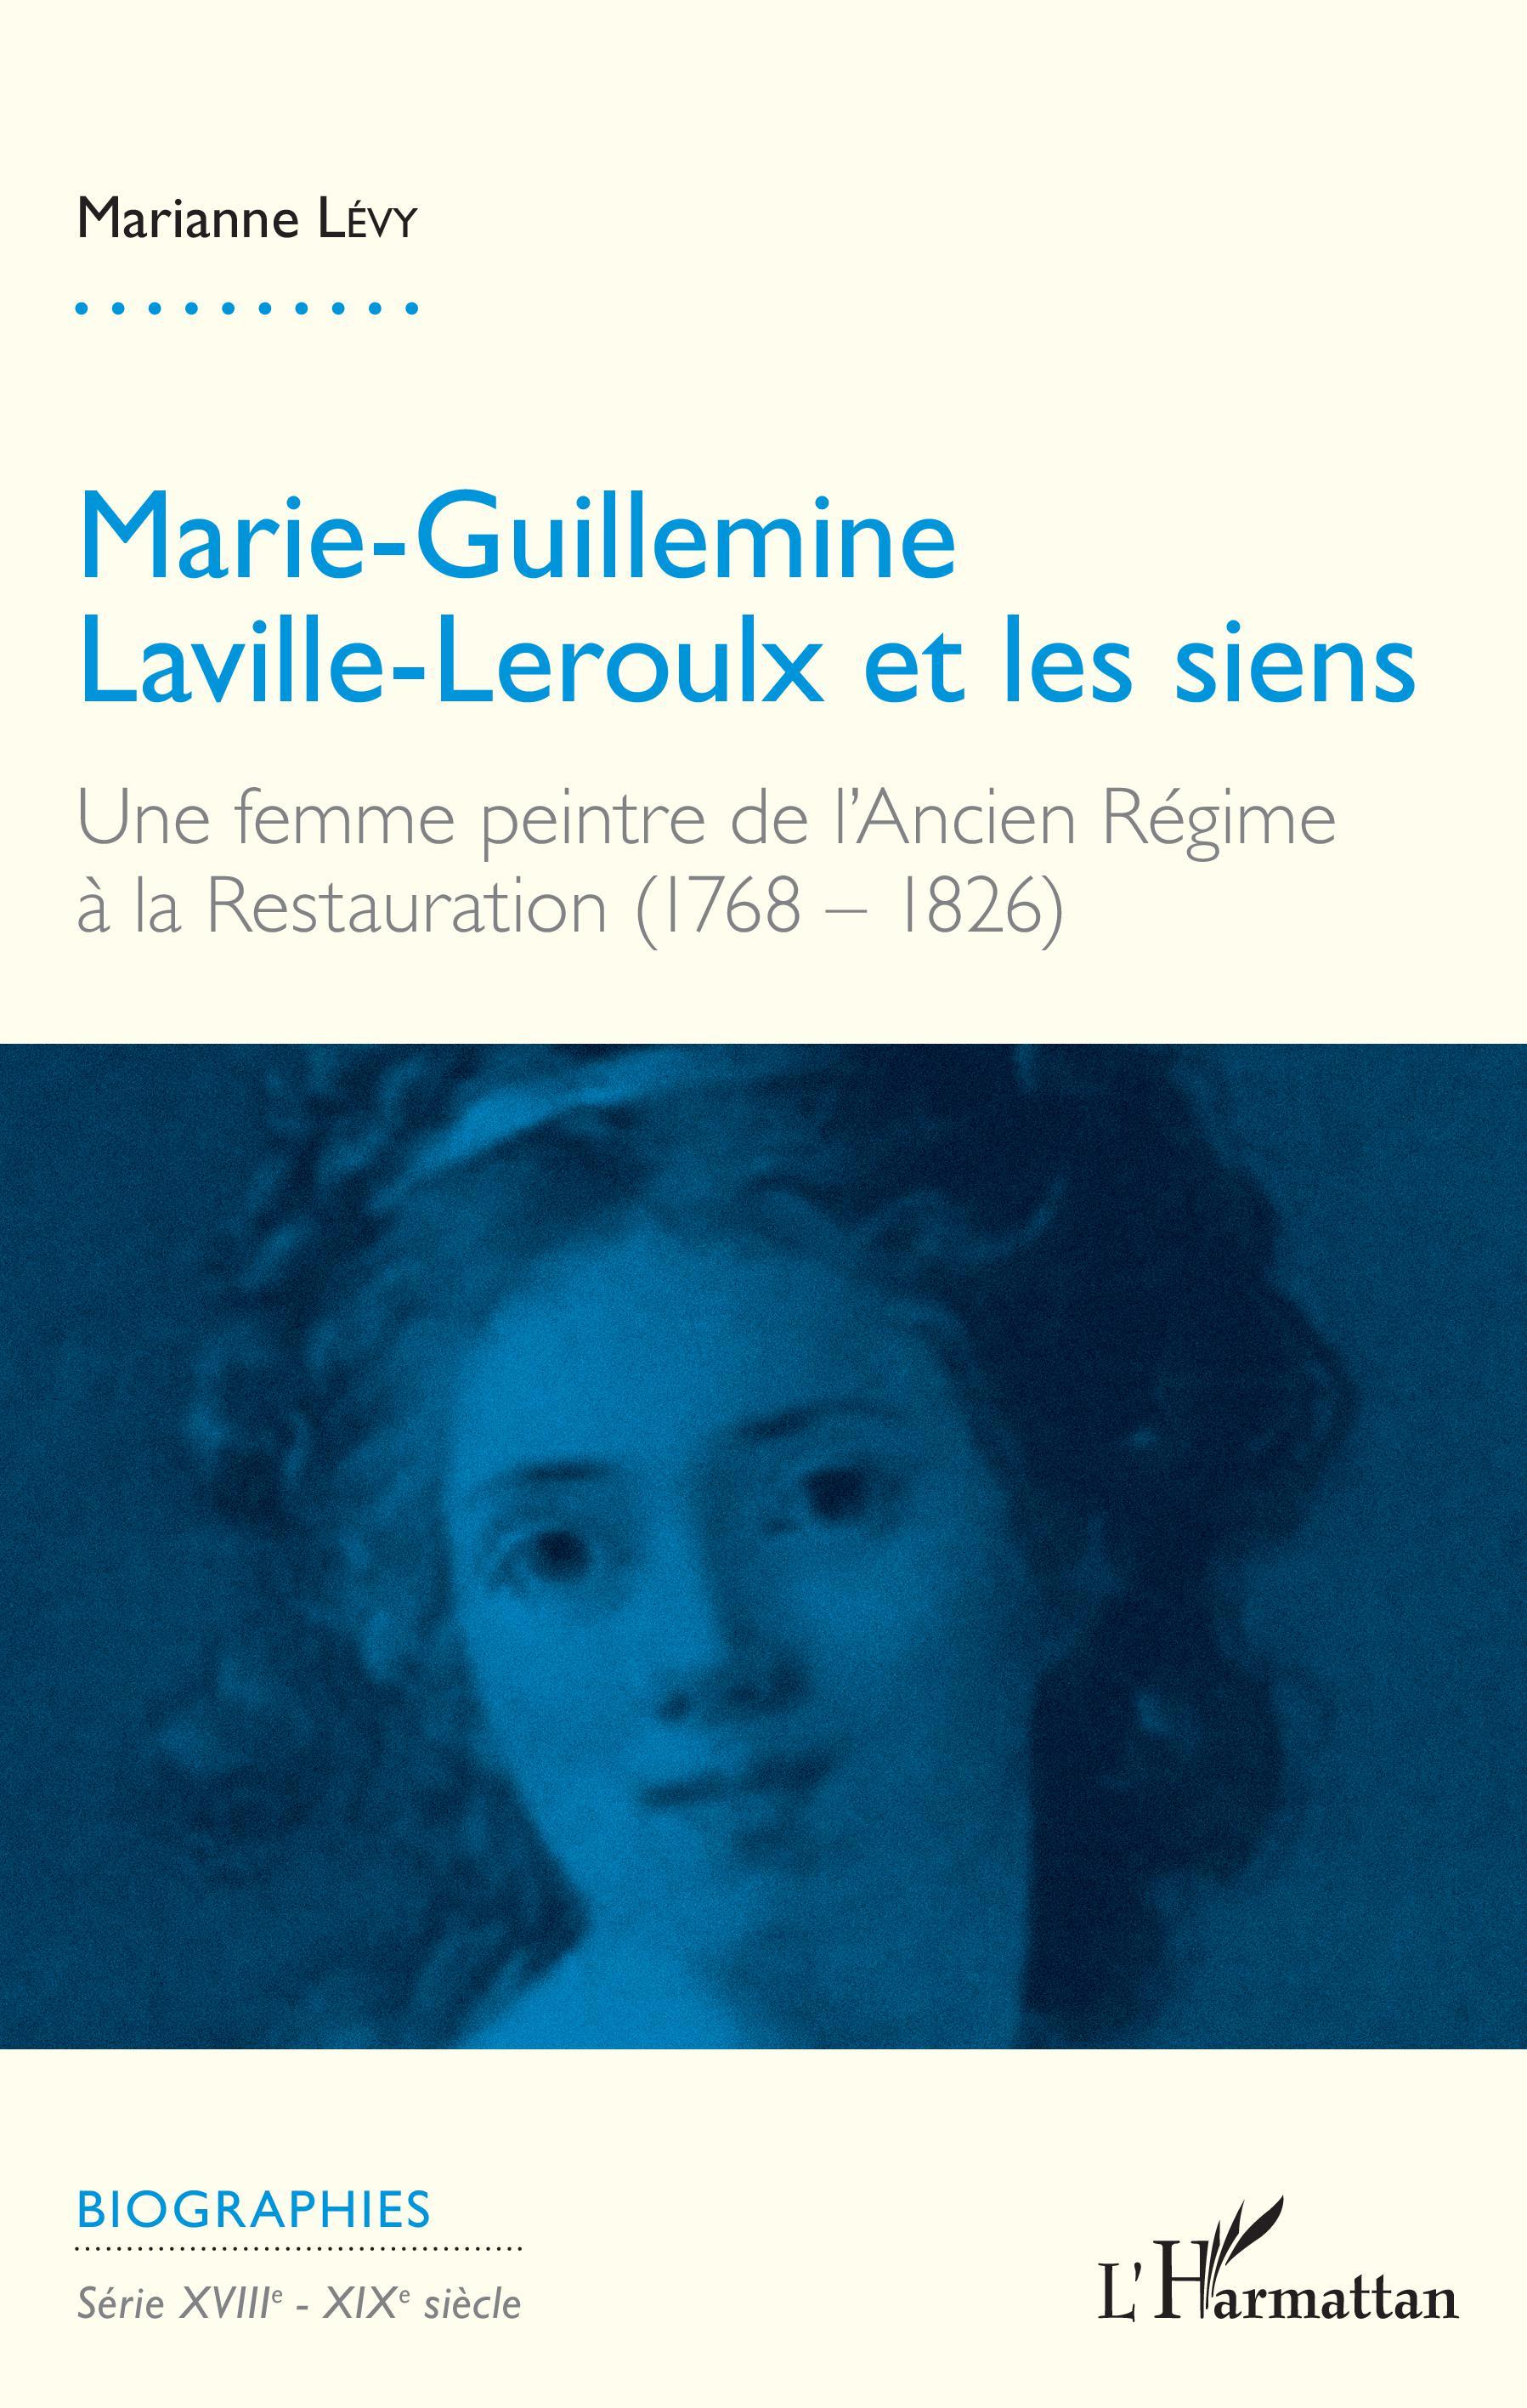 Marie-Guillemine Laville-Leroulx et les siens, Une femme peintre de l'Ancien régime à la Restauration (1768-1826) (9782343140568-front-cover)